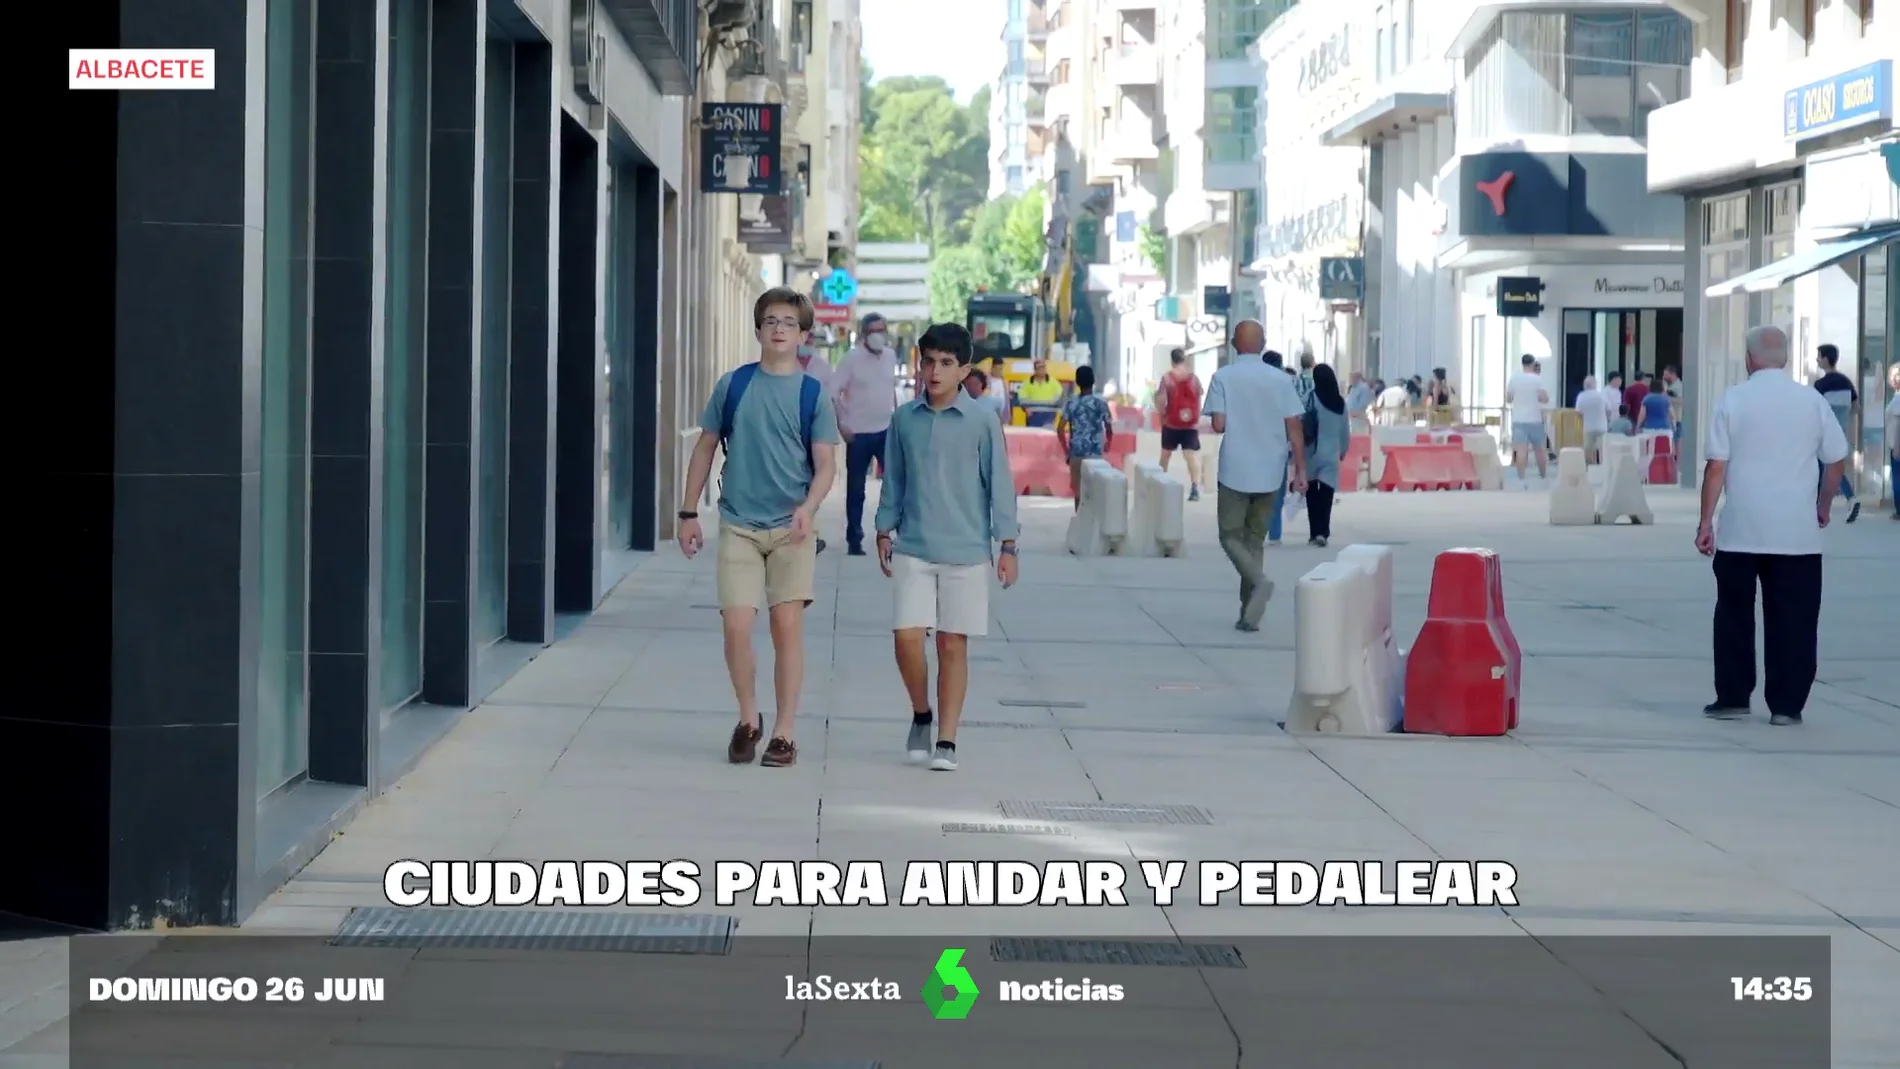 Más calles peatonales y más carriles bici: el tránsito de Albacete, Valencia y Pontevedra hacia la sostenibilidad